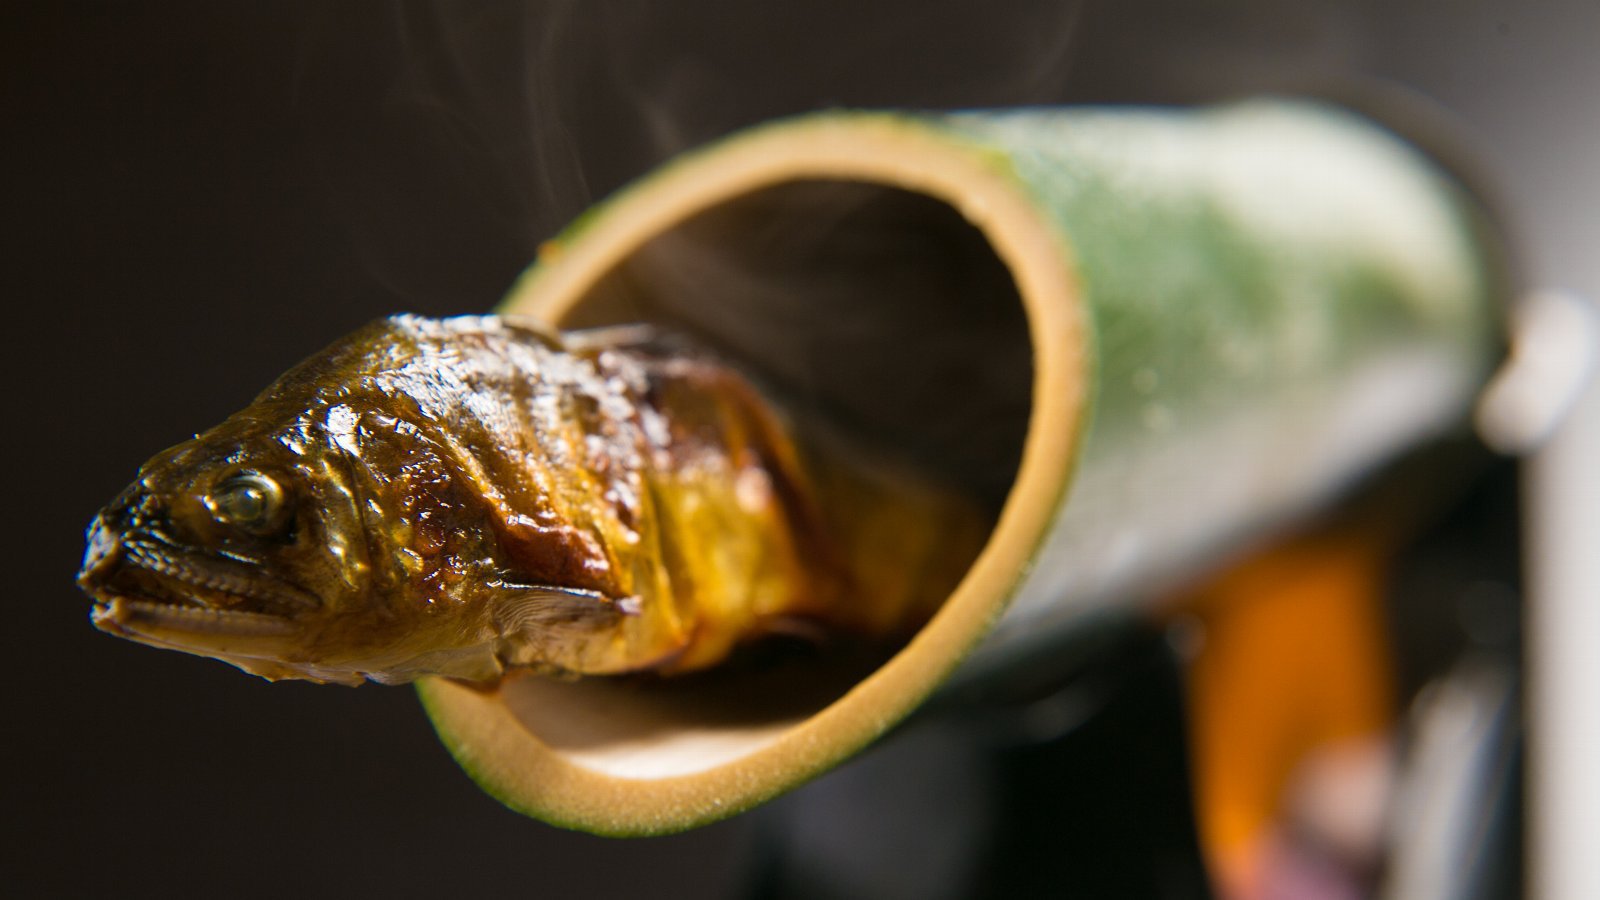 【鮎の骨酒】鮎の風味と香ばしさがお酒をさらに美味しくさせます。厚木ならではの季節の味です